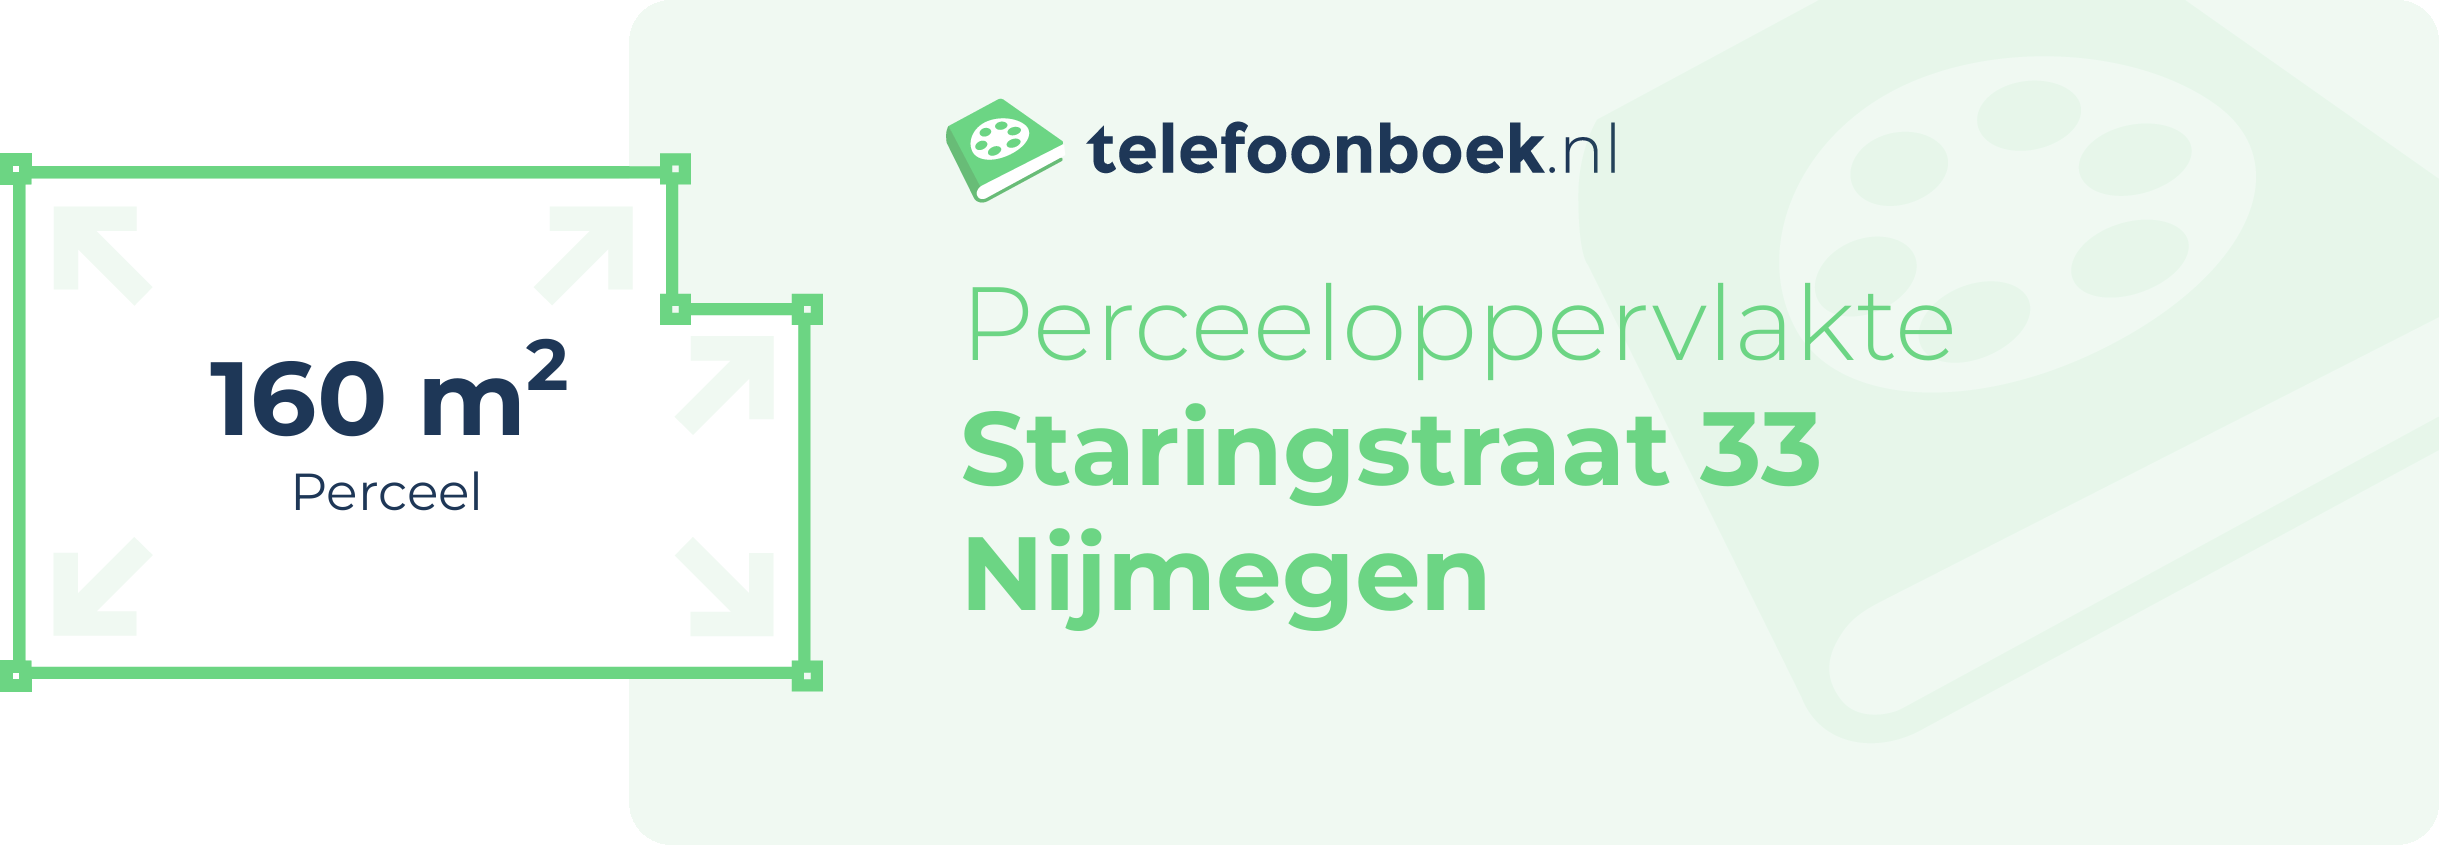 Perceeloppervlakte Staringstraat 33 Nijmegen